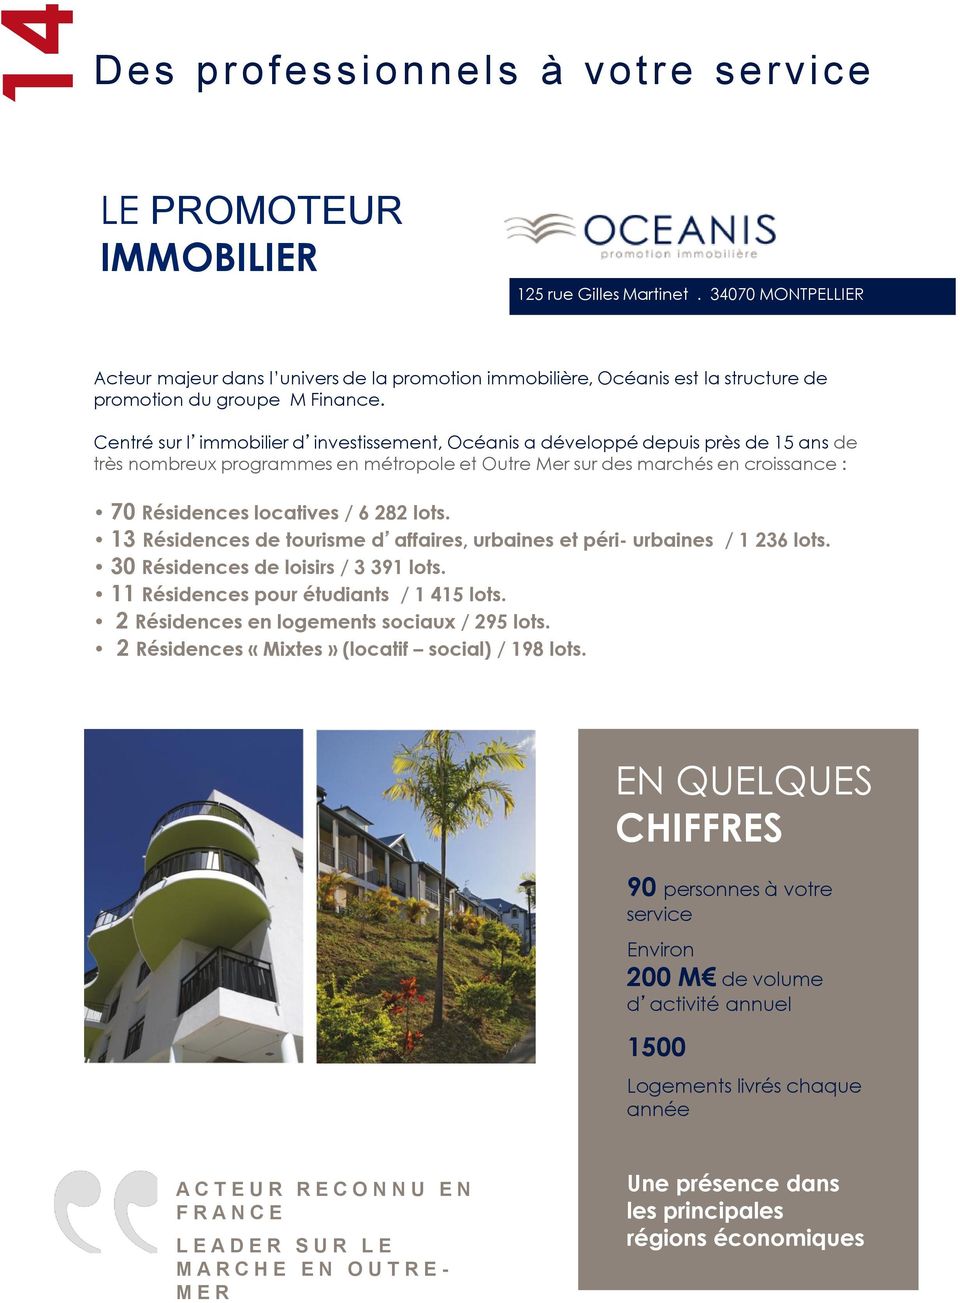 Centré sur l immobilier d investissement, Océanis a développé depuis près de 15 ans de très nombreux programmes en métropole et Outre Mer sur des marchés en croissance : 70 Résidences locatives / 6